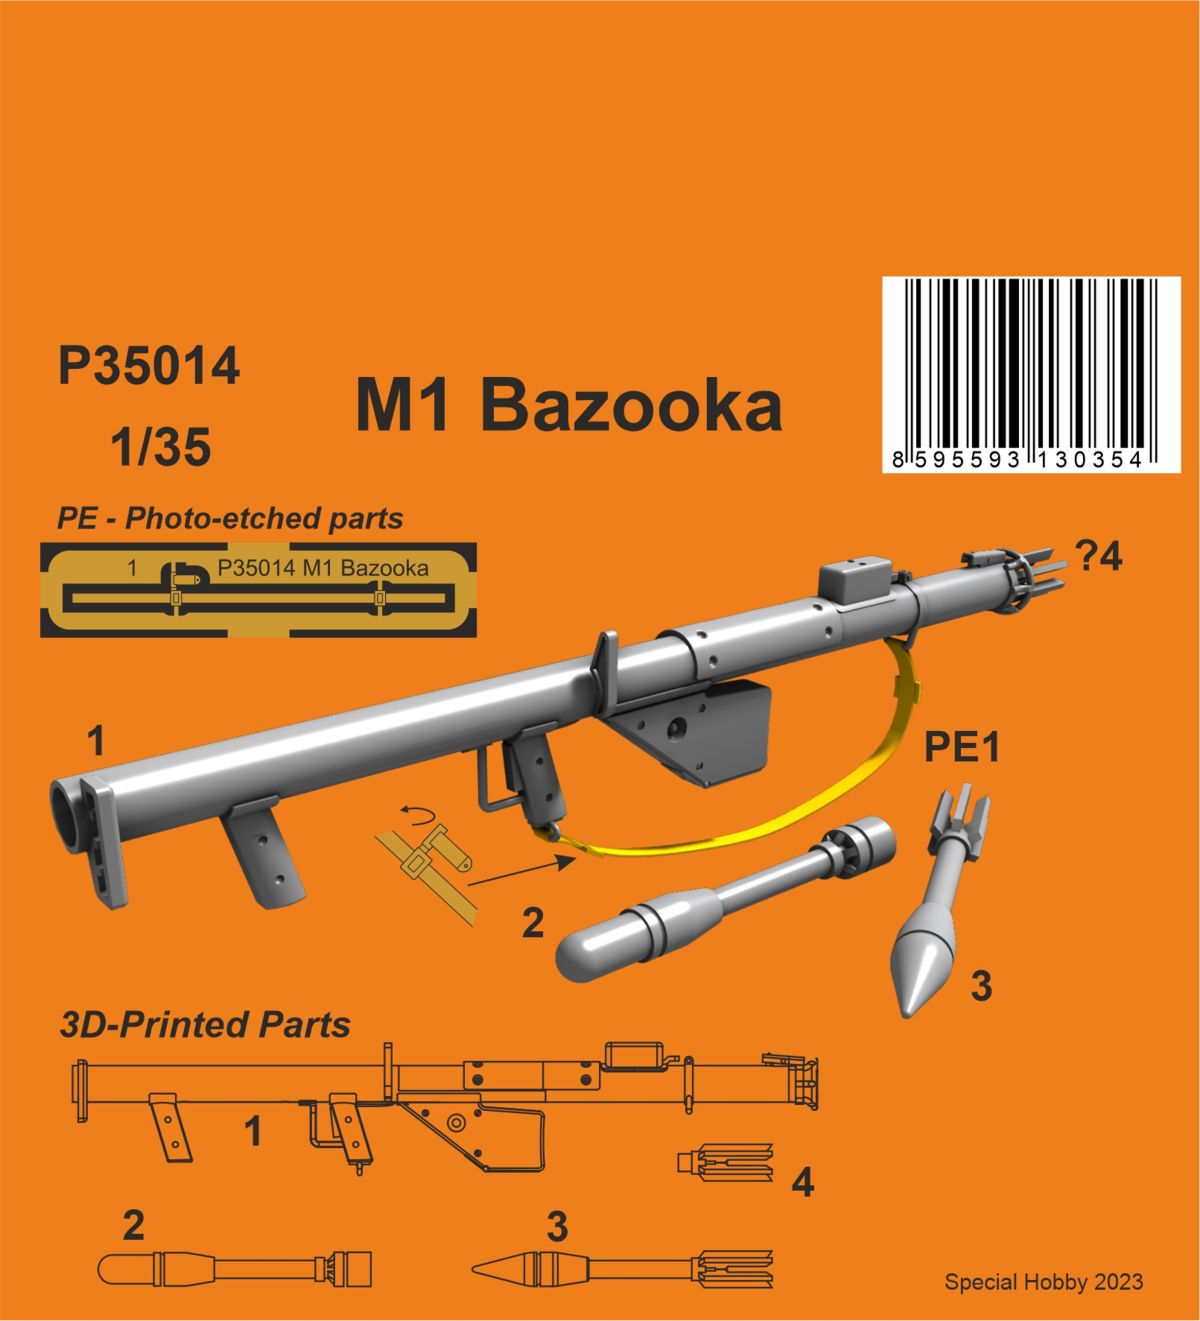 1/35 M1 Bazooka